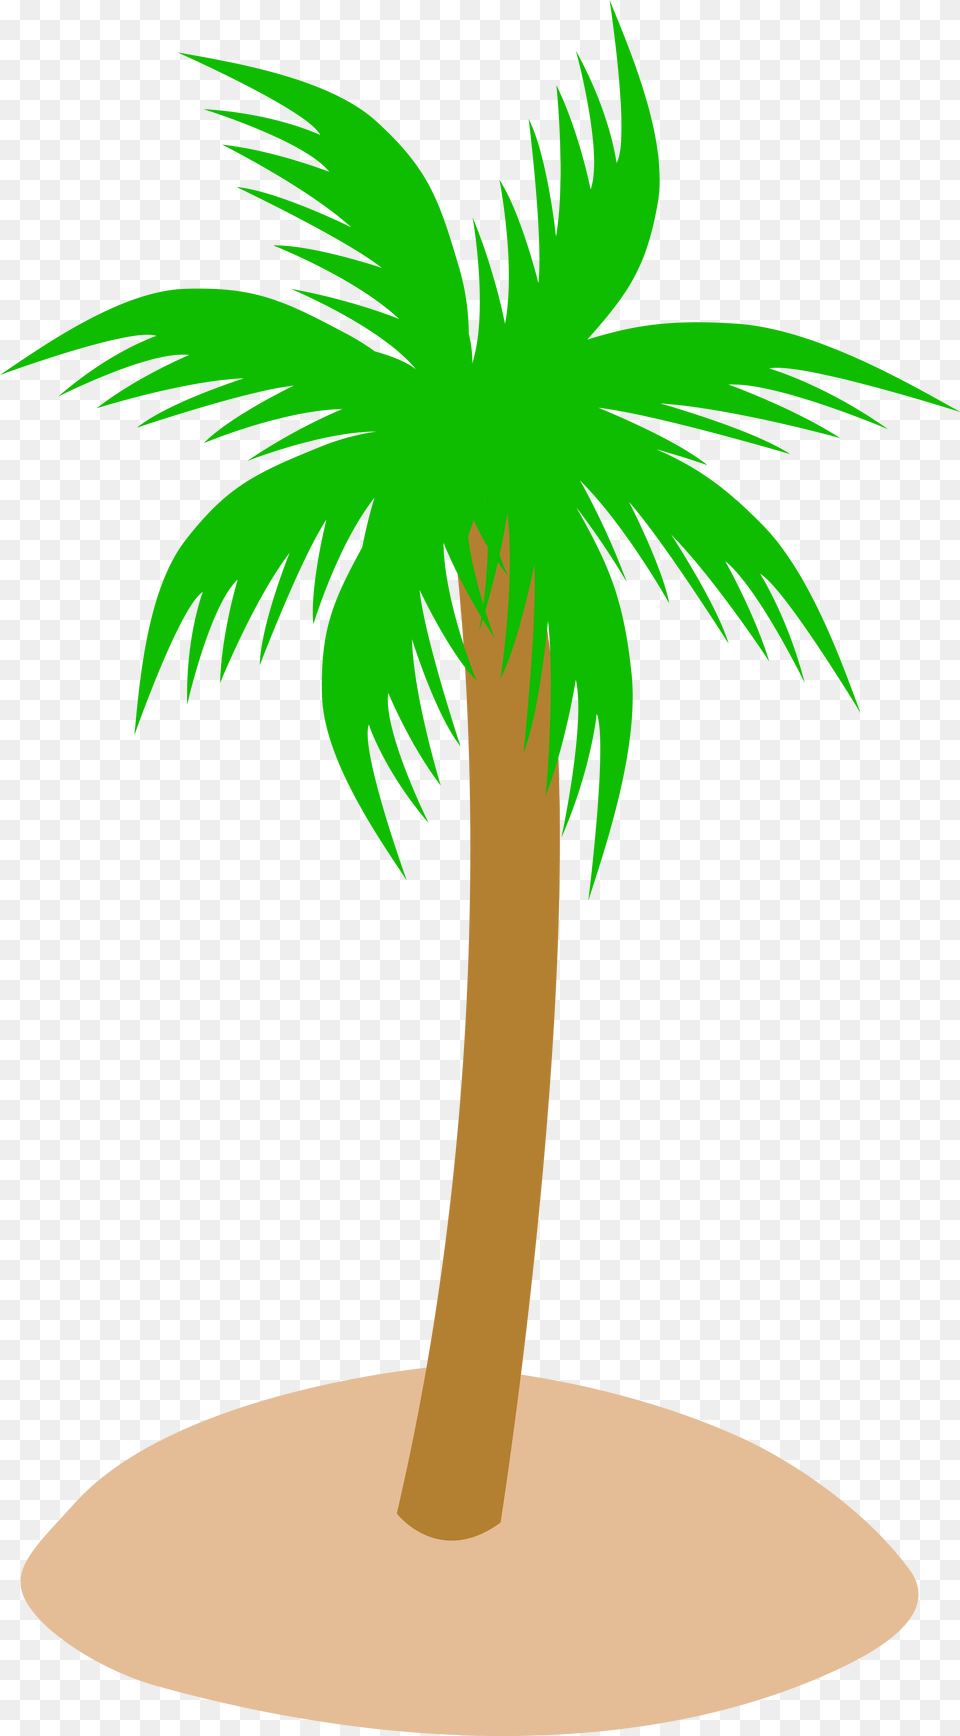 Free Transparent Cartoon Palm Tree Cartoon Palm Tree, Palm Tree, Plant, Animal, Bird Png